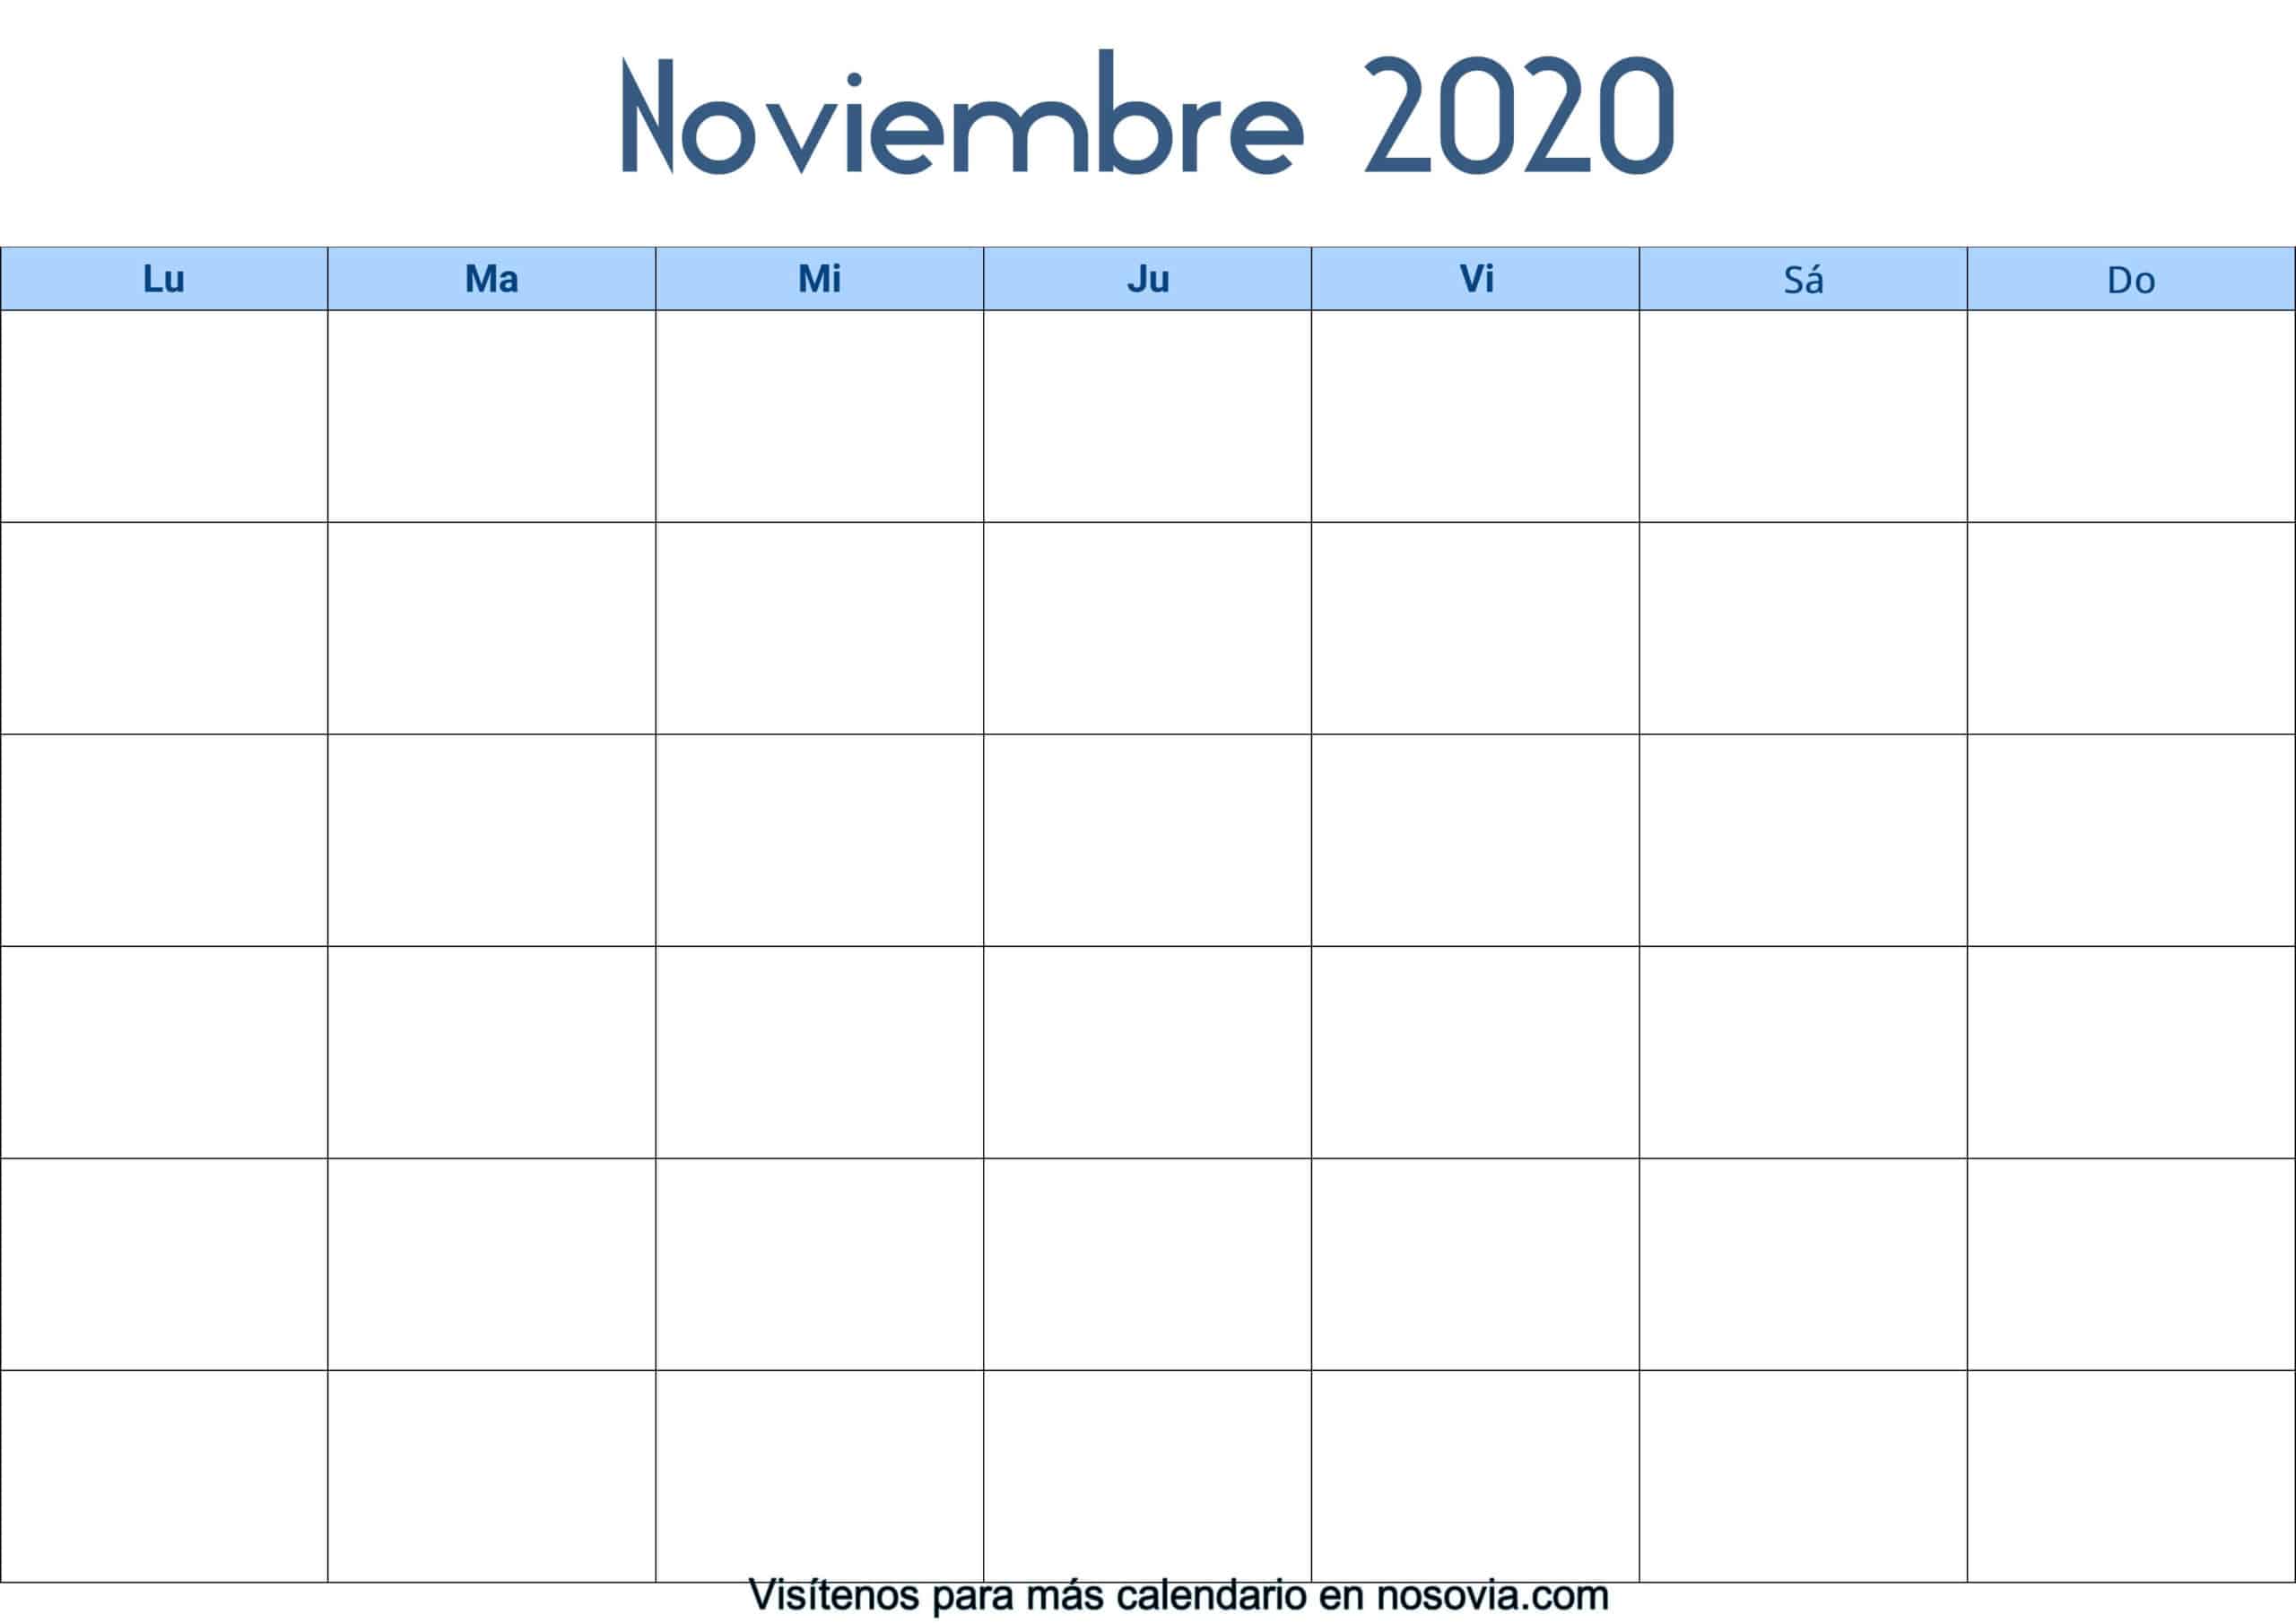 Calendario-noviembre-2020-en-blanco-Palabra-gratis